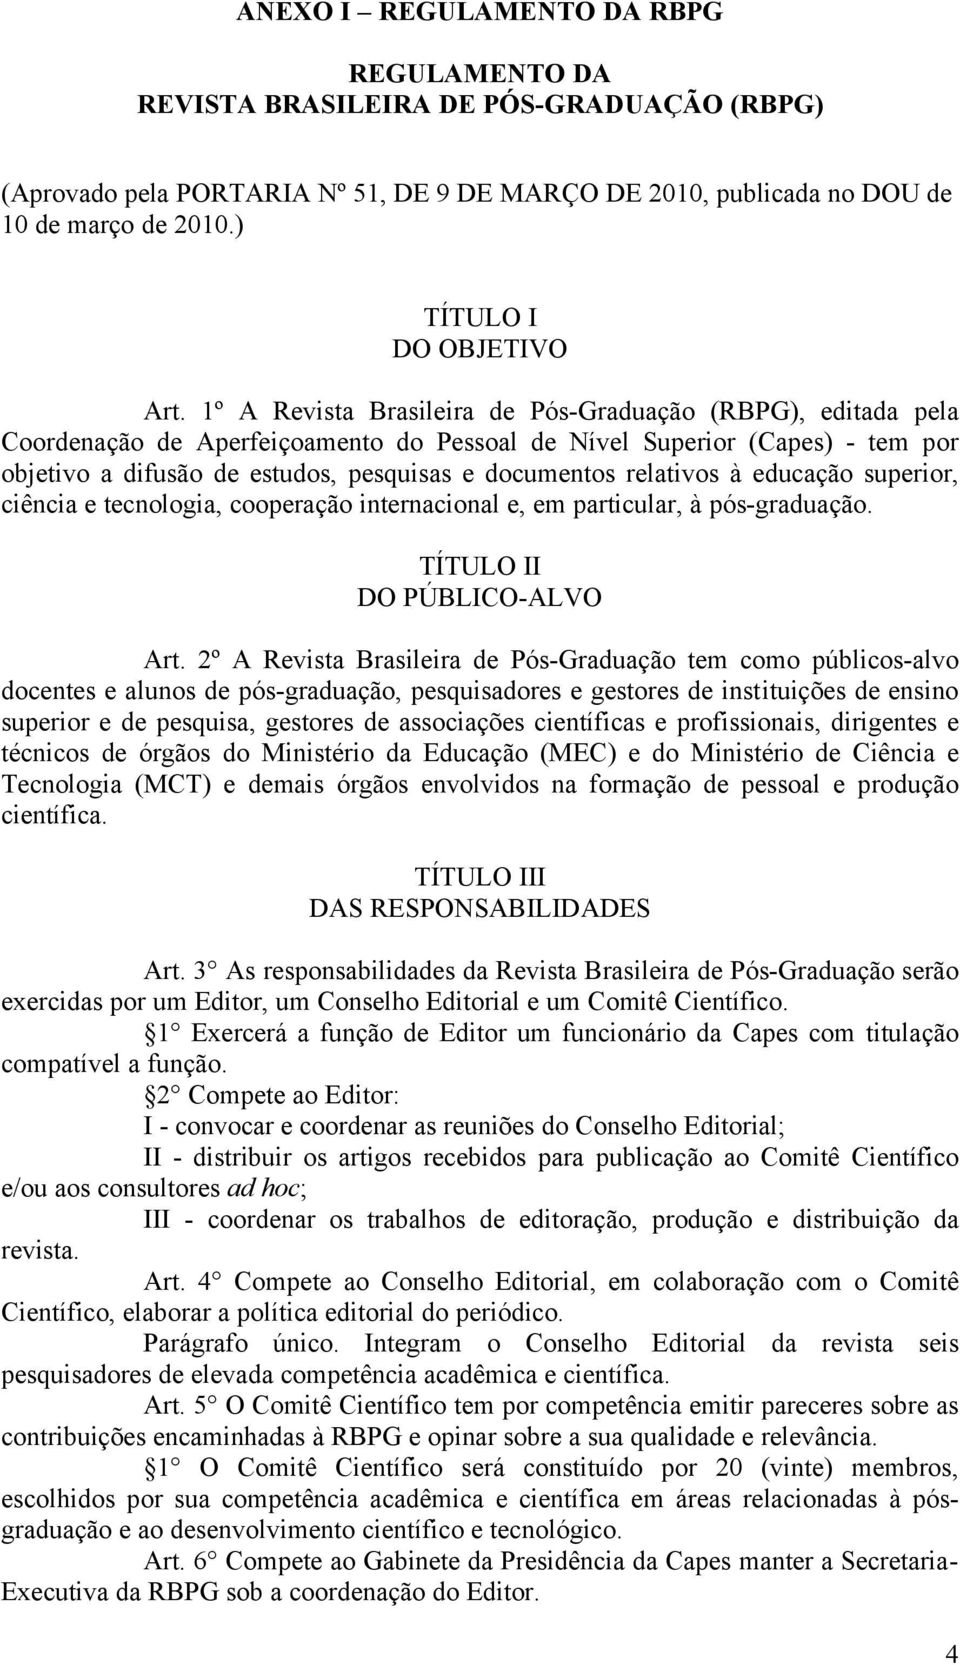 1º A Revista Brasileira de Pós-Graduação (RBPG), editada pela Coordenação de Aperfeiçoamento do Pessoal de Nível Superior (Capes) - tem por objetivo a difusão de estudos, pesquisas e documentos